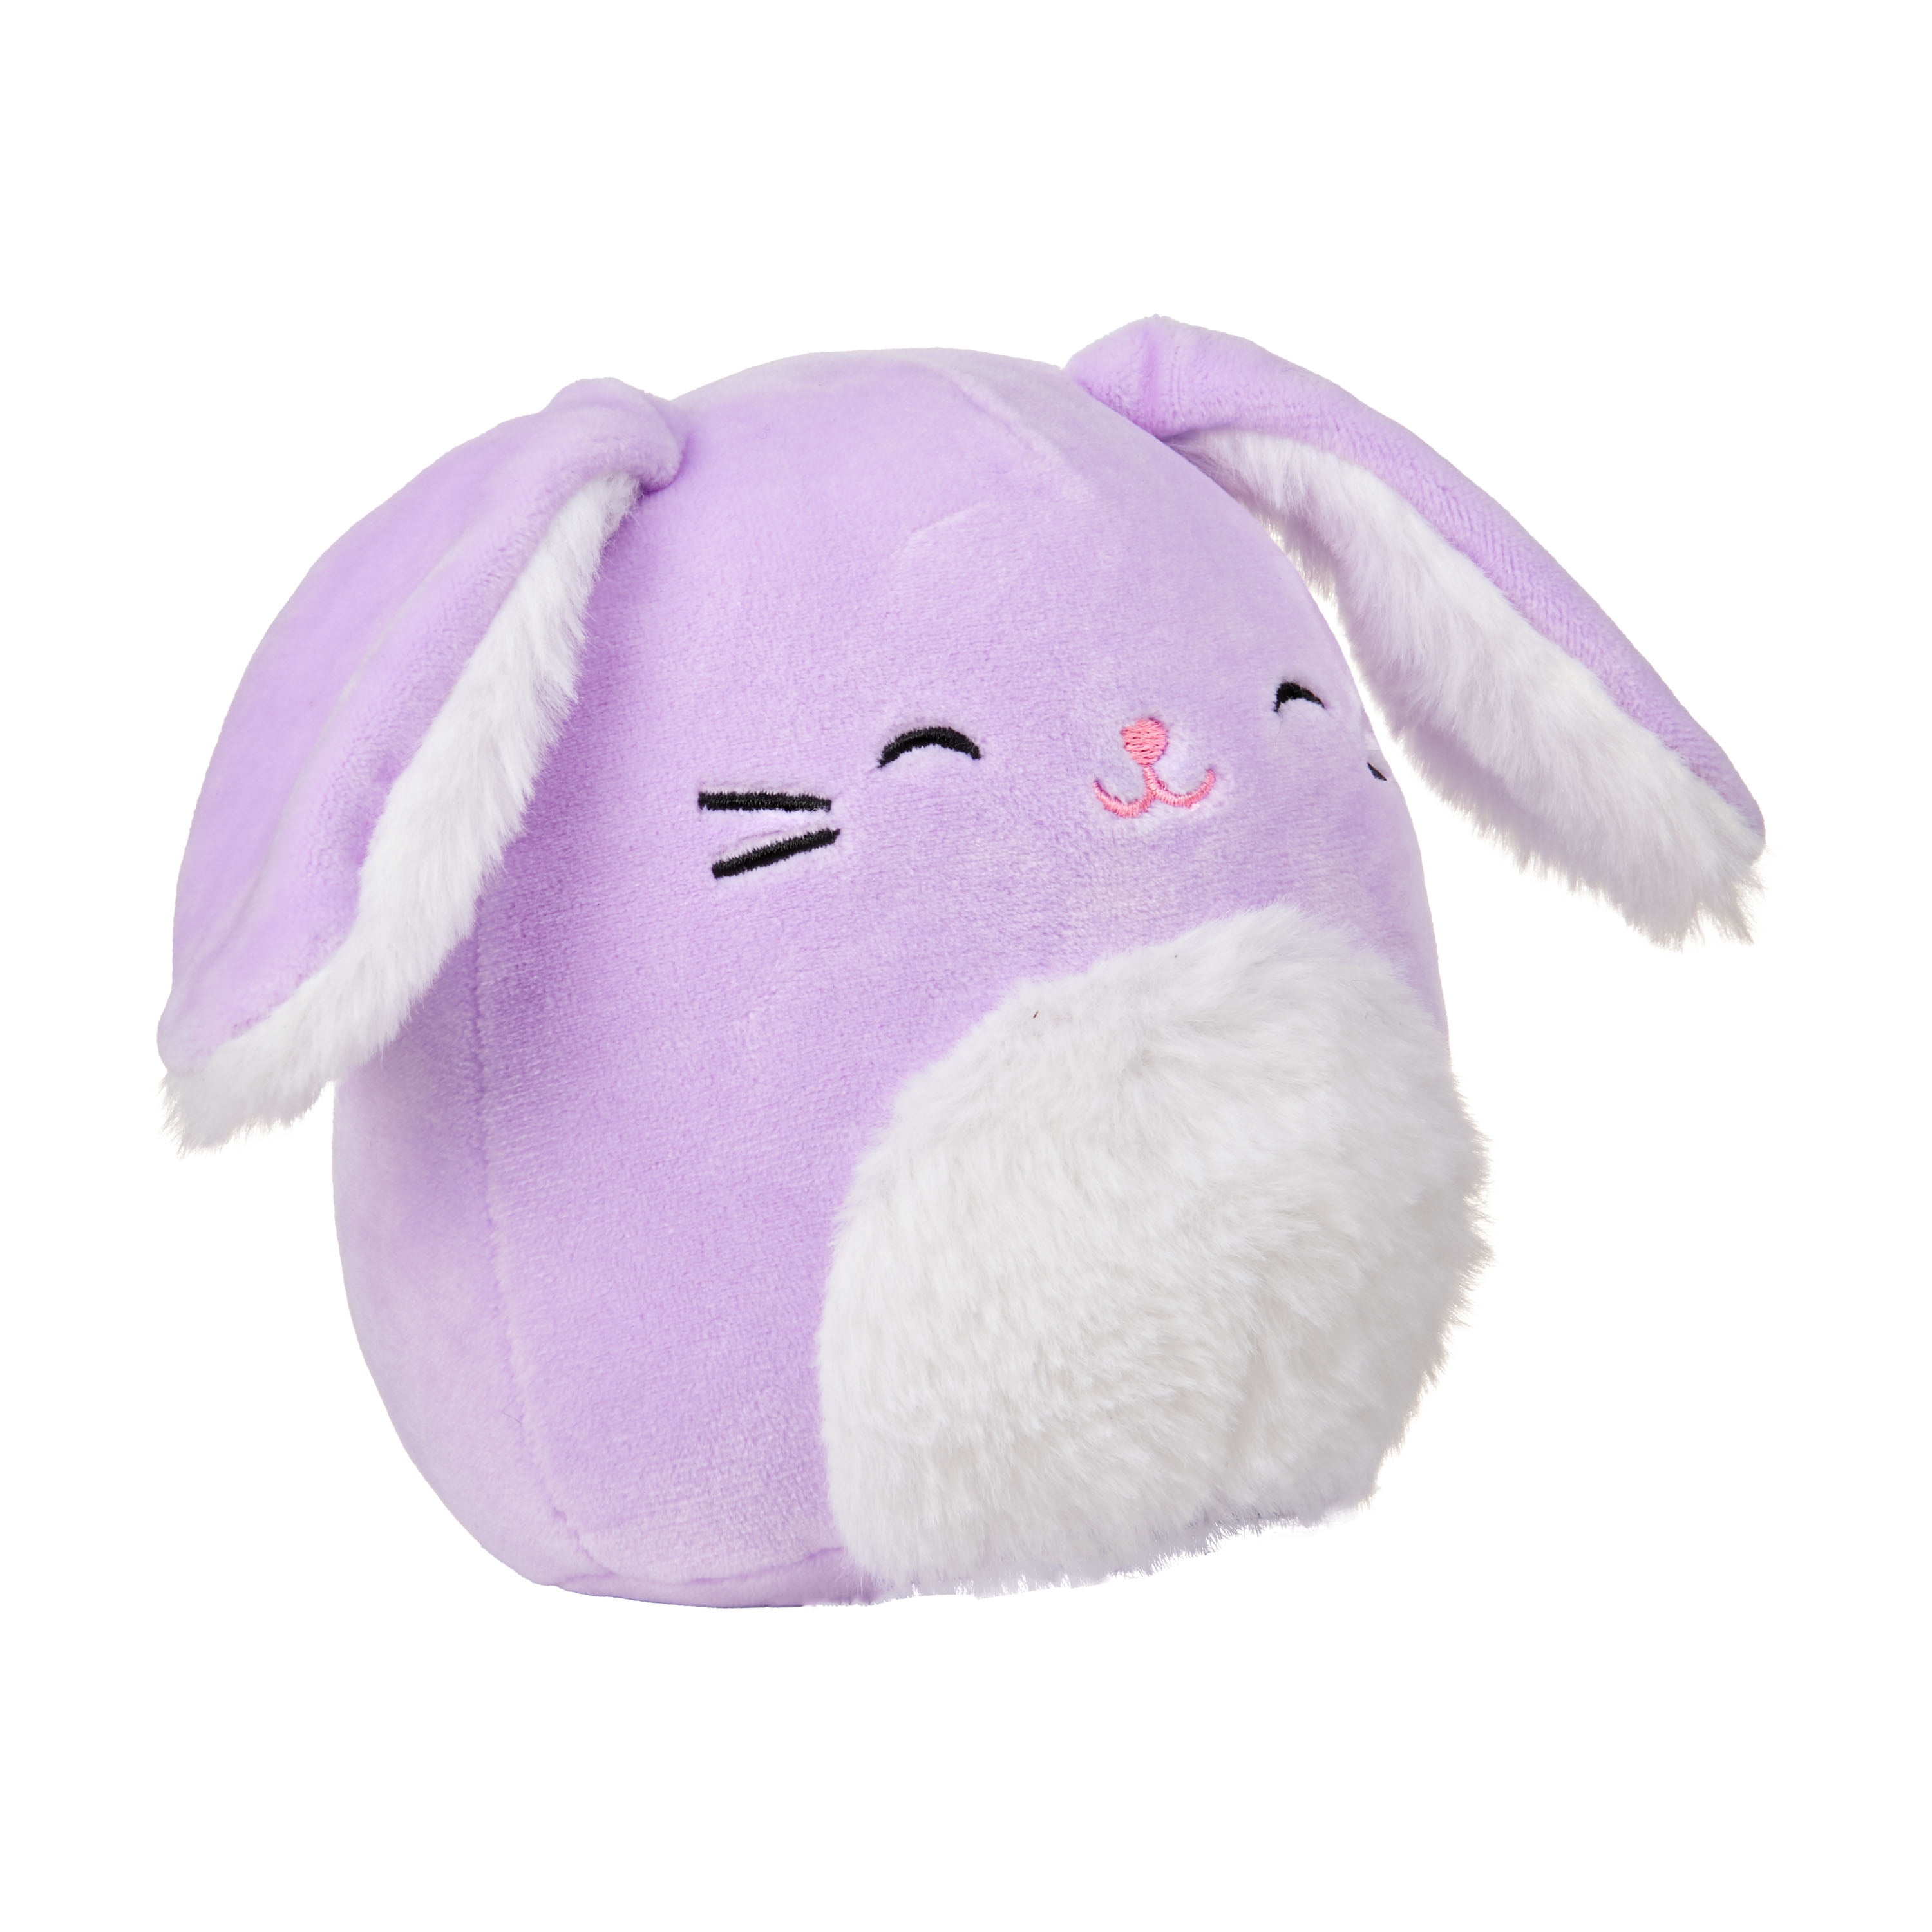 Squishmallow Bubbles the Purple 8 inch  Plush Bunny New Tags 